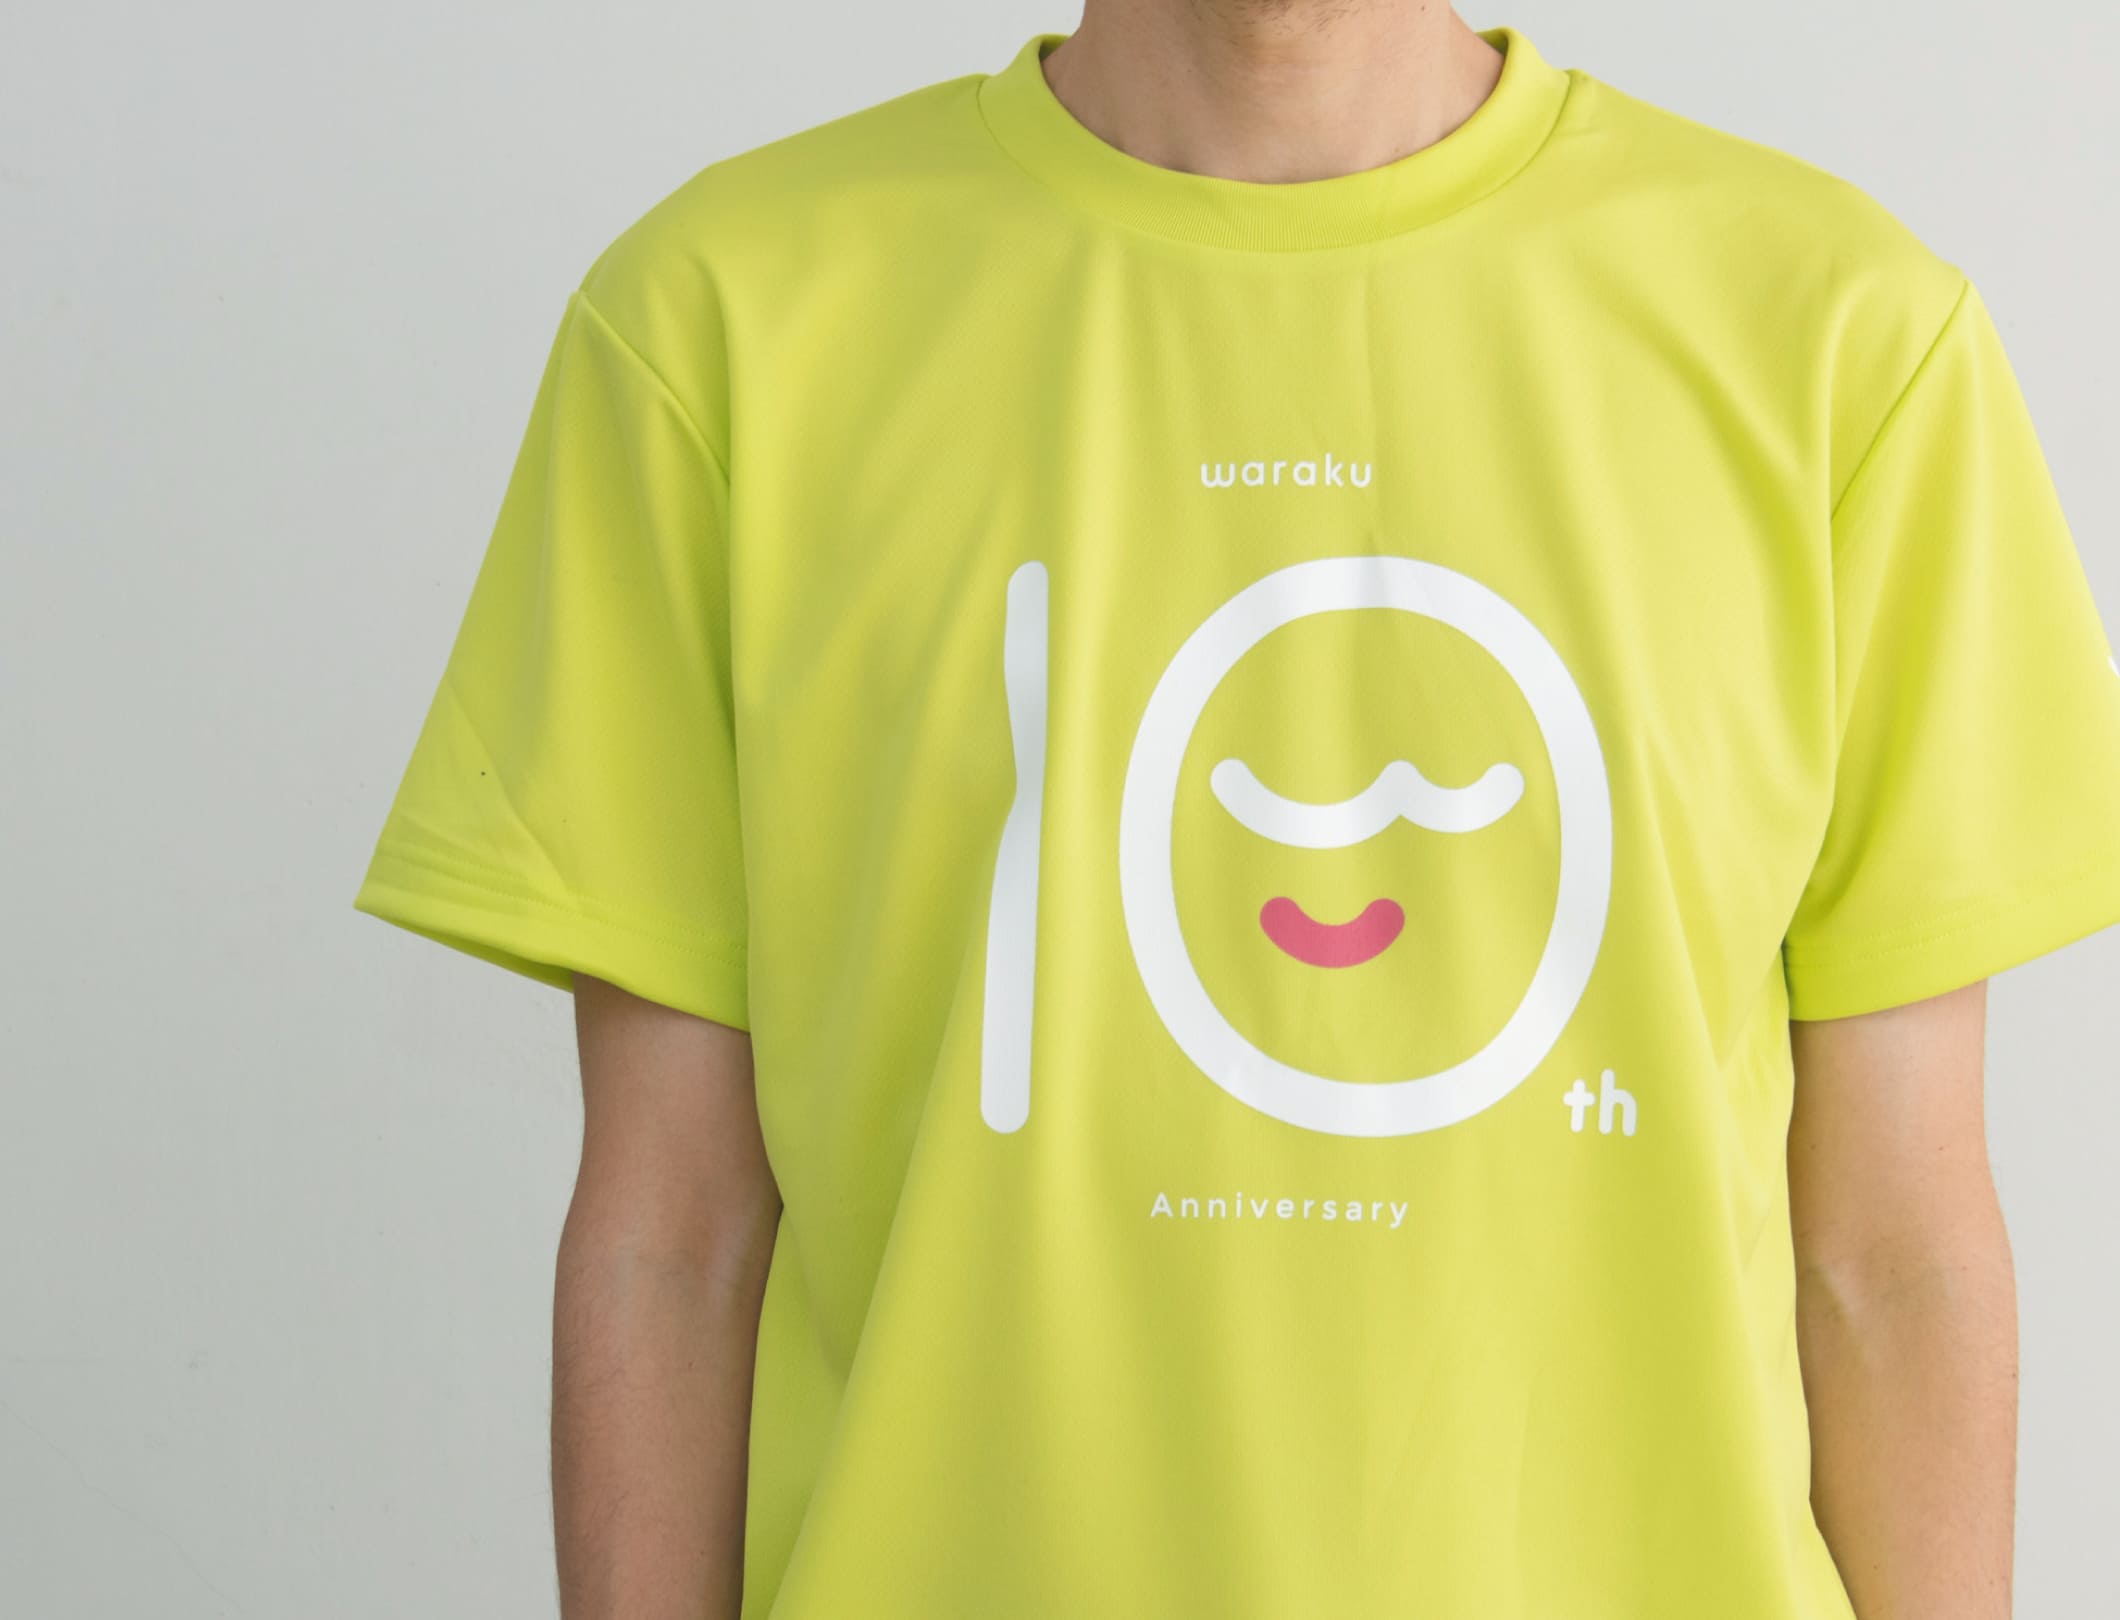 WARAKU わらく 10周年ロゴマーク  Tシャツ・クリアファイル